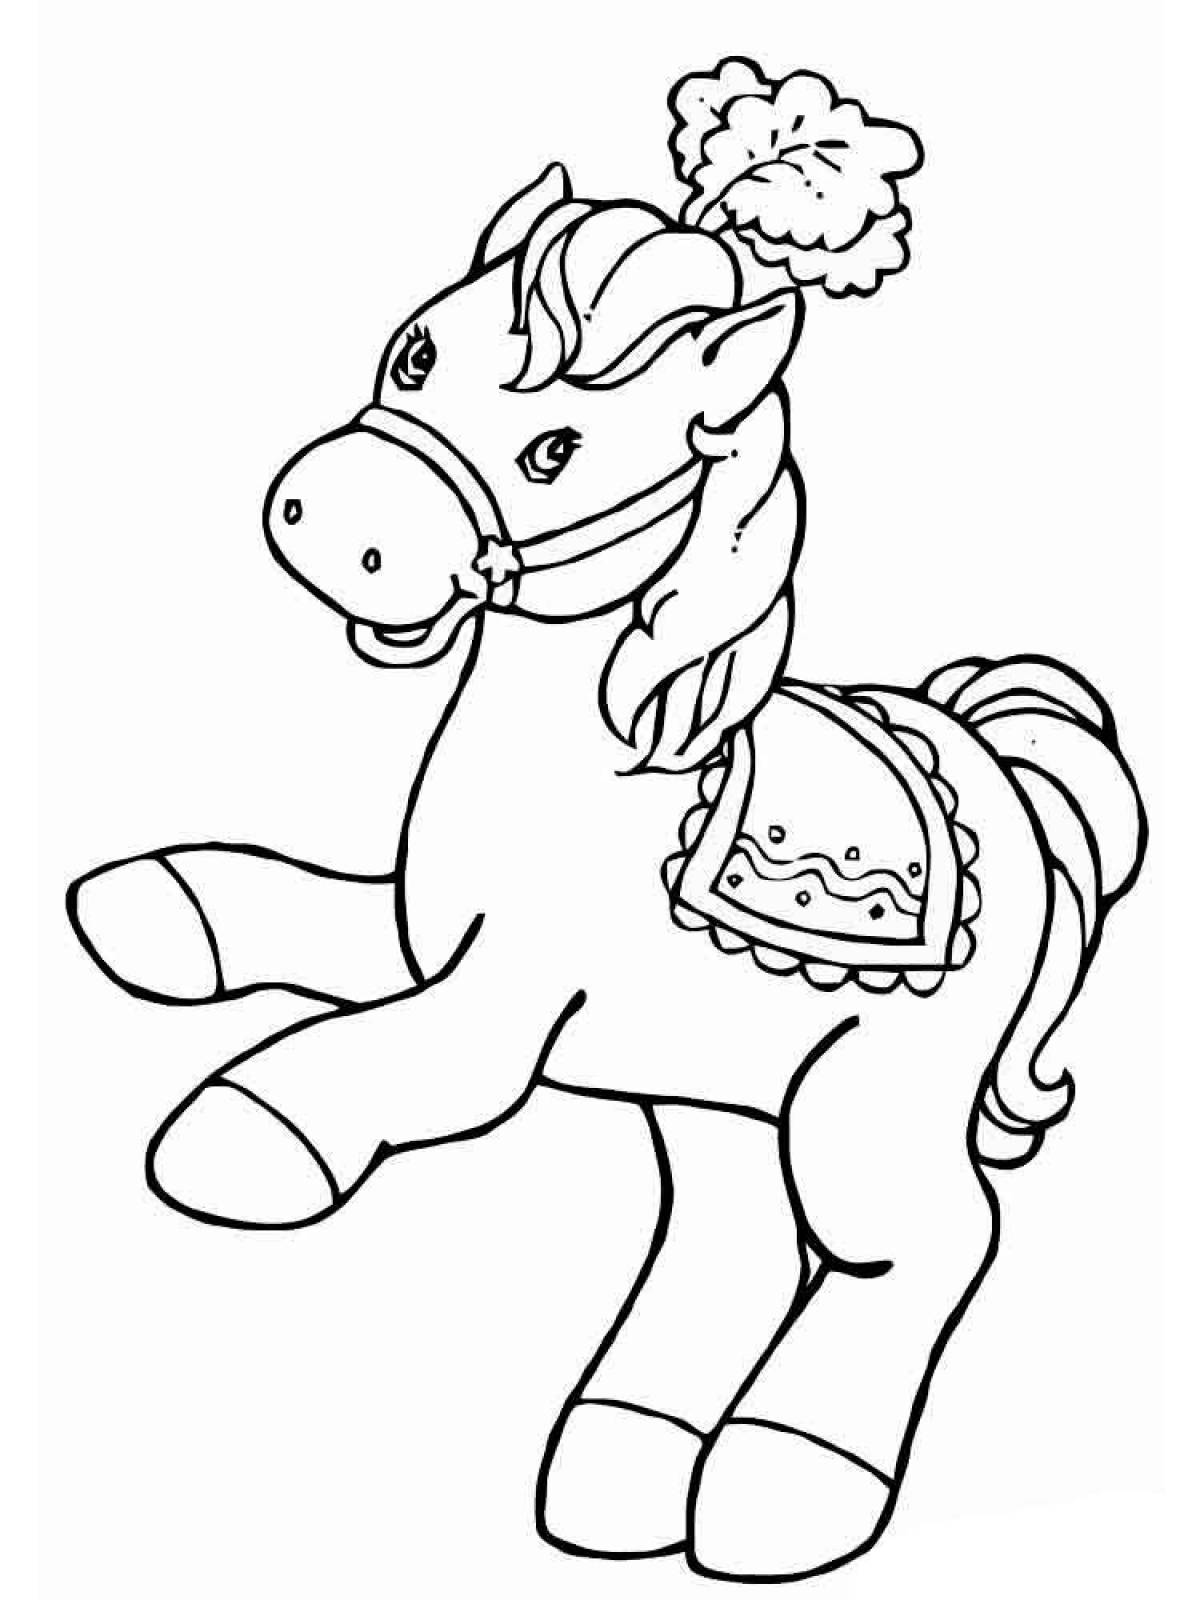 Веселая лошадь раскраска для детей 3-4 лет